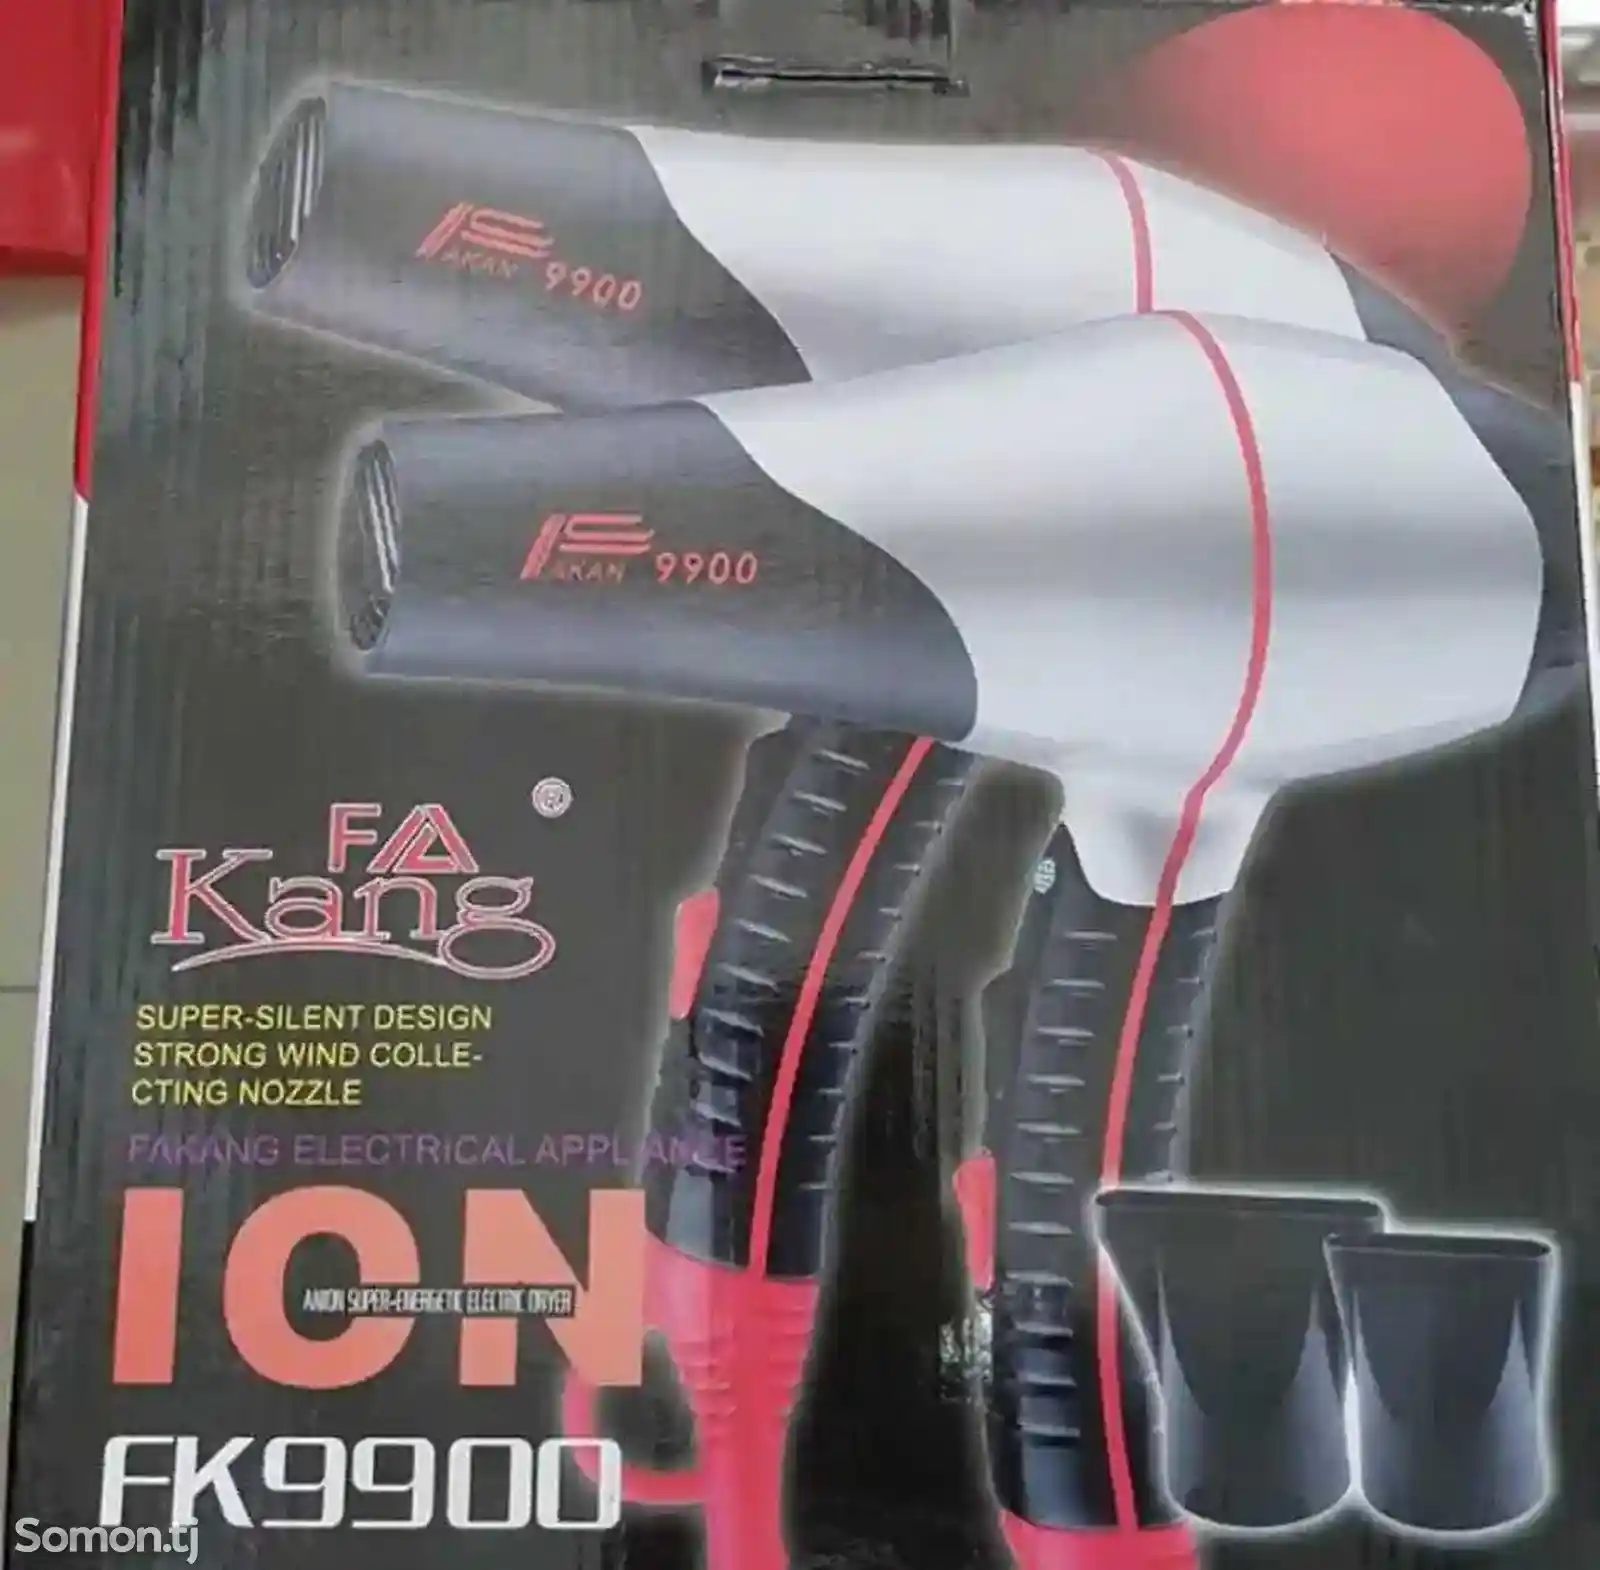 Фен King FK-9900